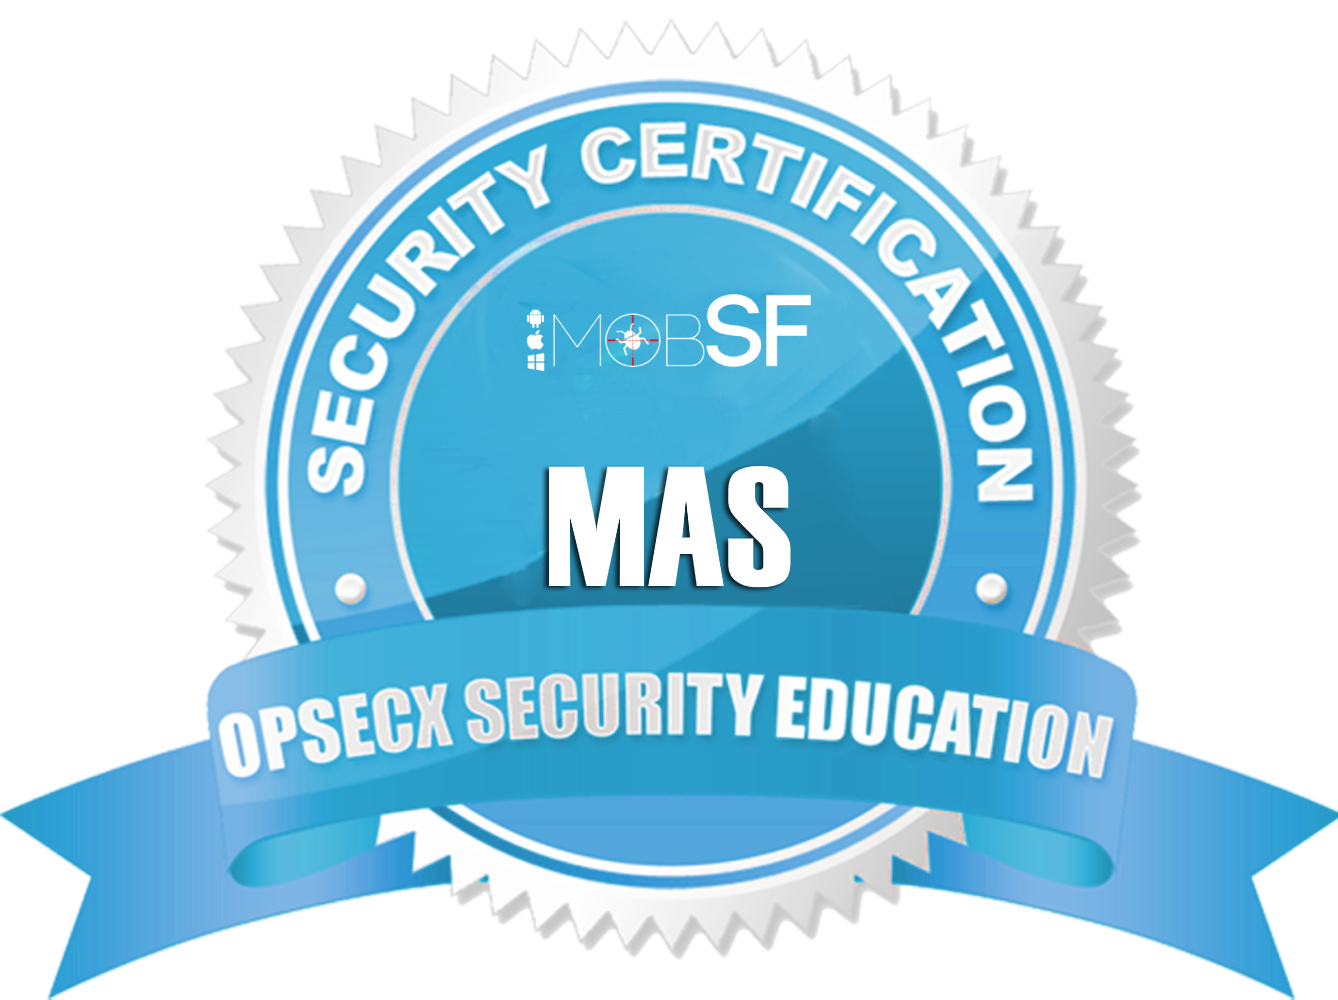 MAS-Securityapps.png